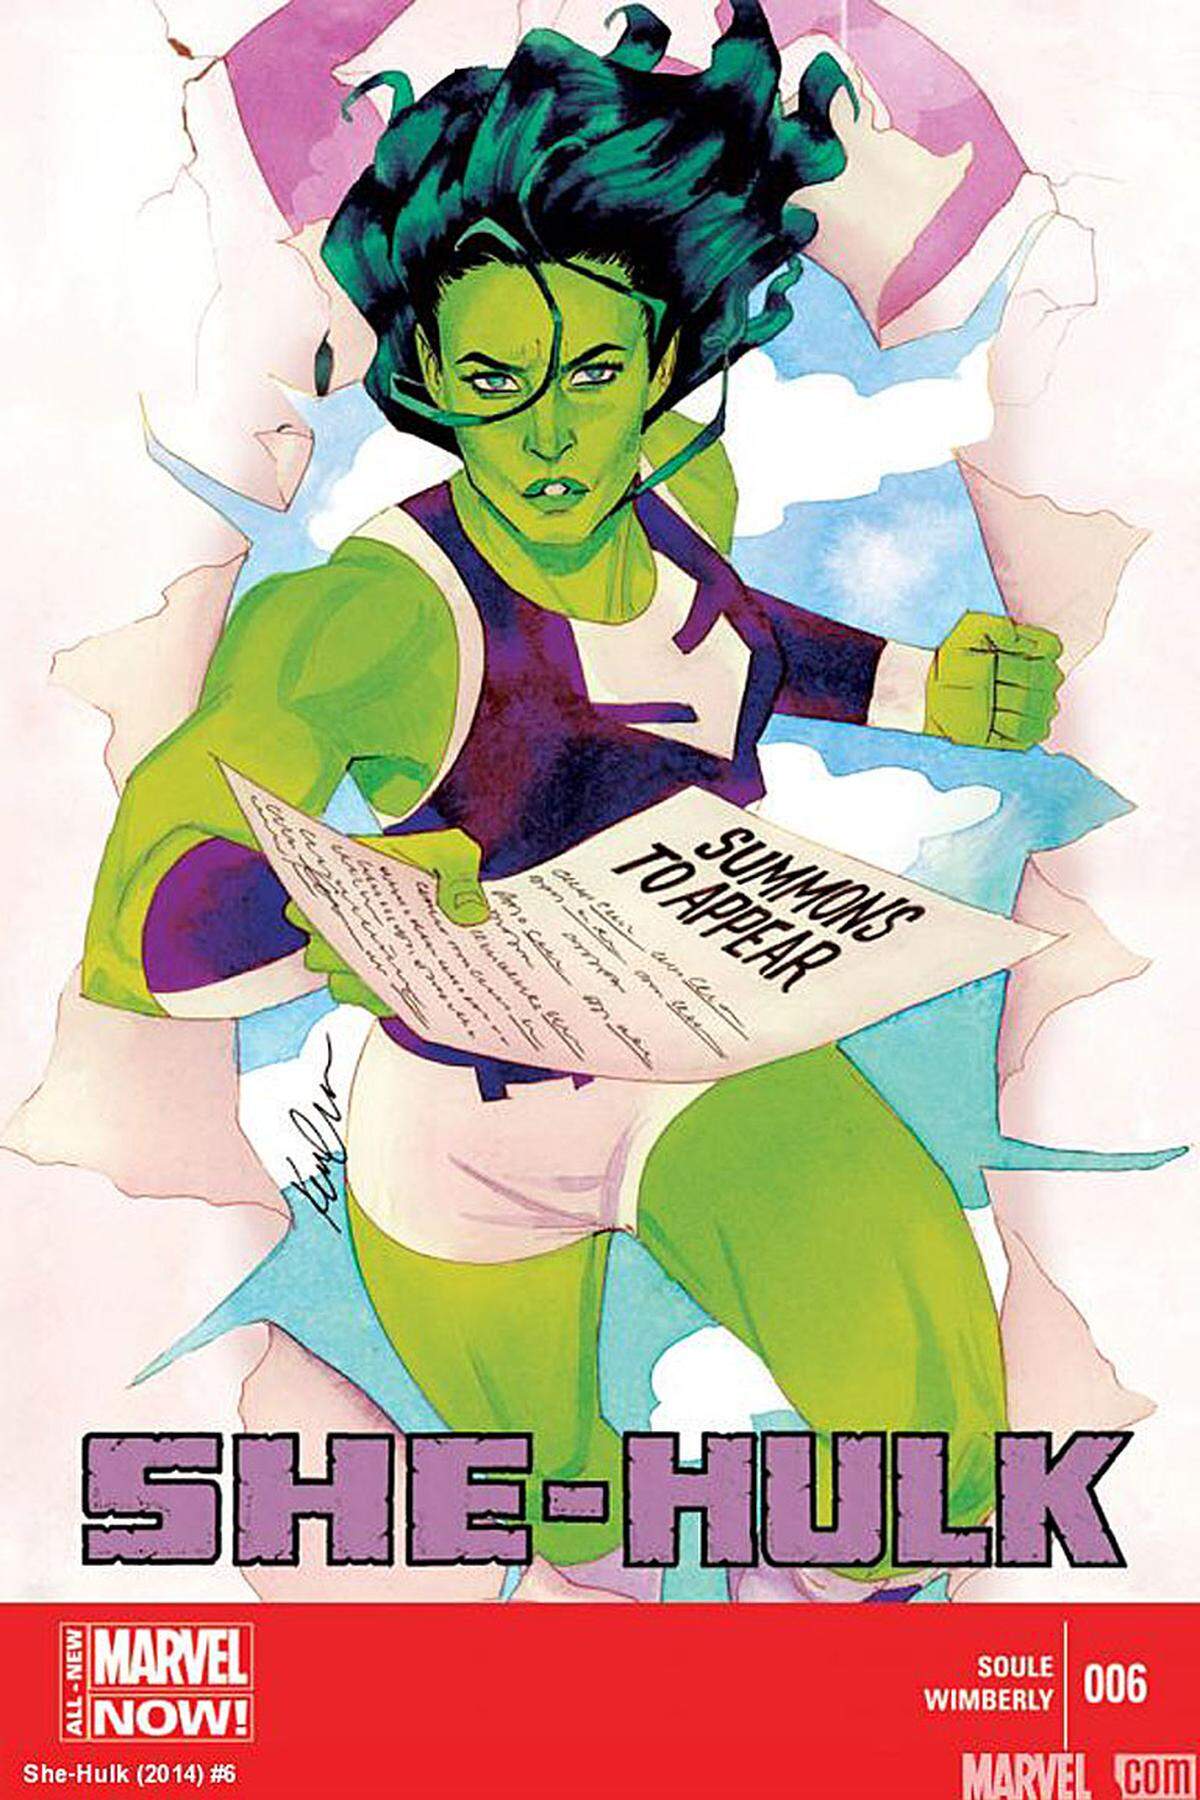 Im Februar startete der Marvel-Verlag eine neue "She Hulk"-Serie. Seit wenigen Tagen kursieren im Internet Gerüchte, wonach die Cousine von Hulk ihr Film-Debüt feiern könnte. Eliza Dushku, bekannt als Faith in "Buffy The Vampire Slayer"), wird für die Rolle gehandelt.Vor rund 20 Jahren hätte Brigitte Nielsen die grüne Superheldin spielen sollen. Sie posierte 1991 als She-Hulk. Aus dem Projekt wurde aber nichts.